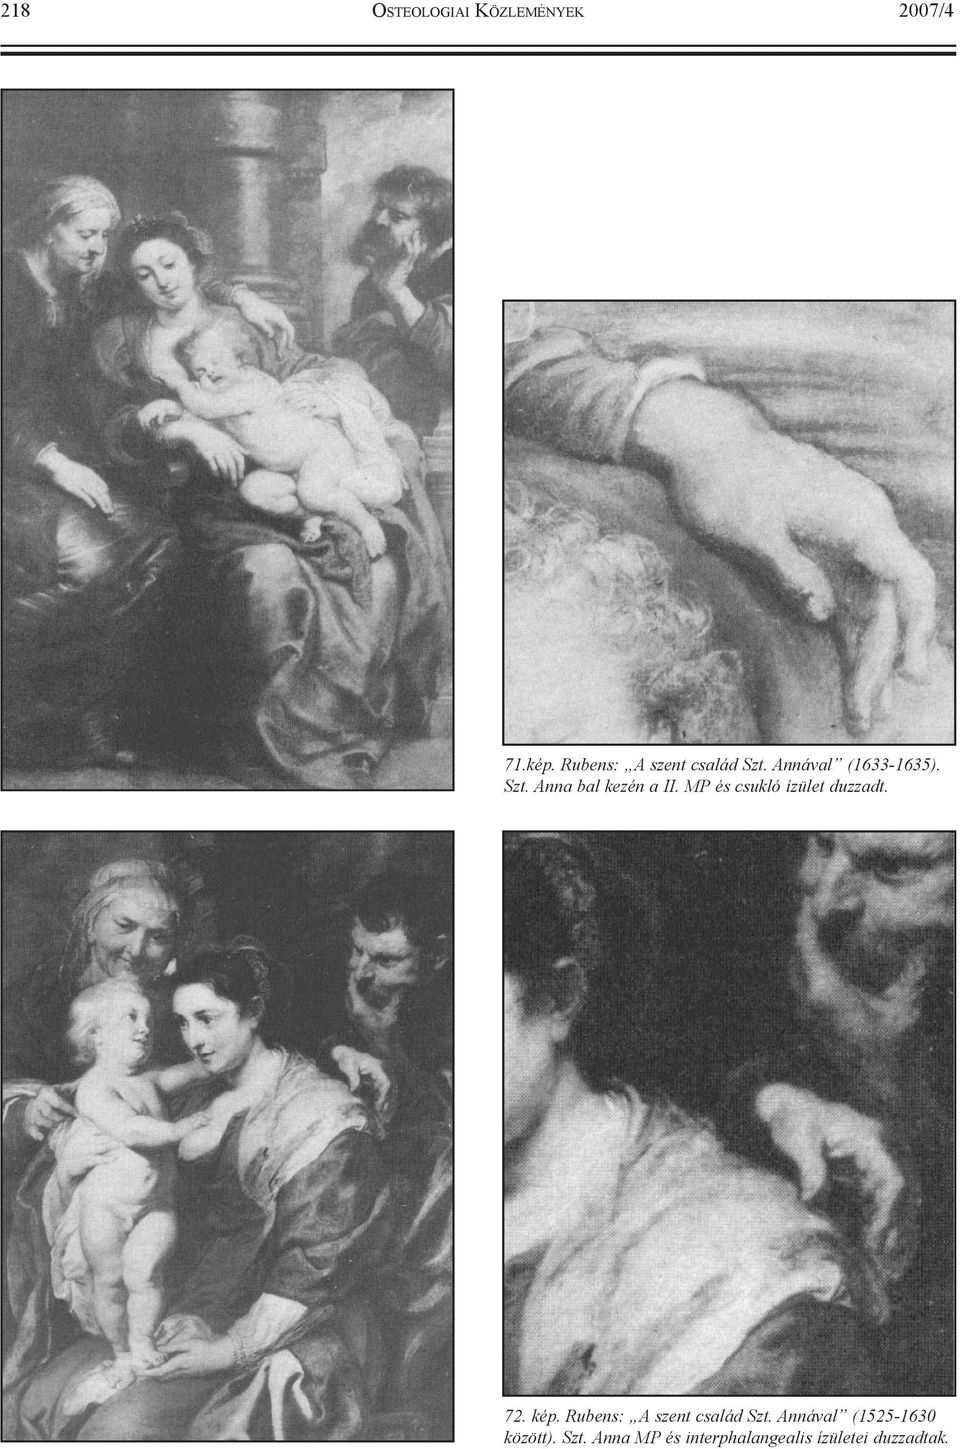 MP és csukló ízület duzzadt. 72. kép. Rubens: A szent család Szt.